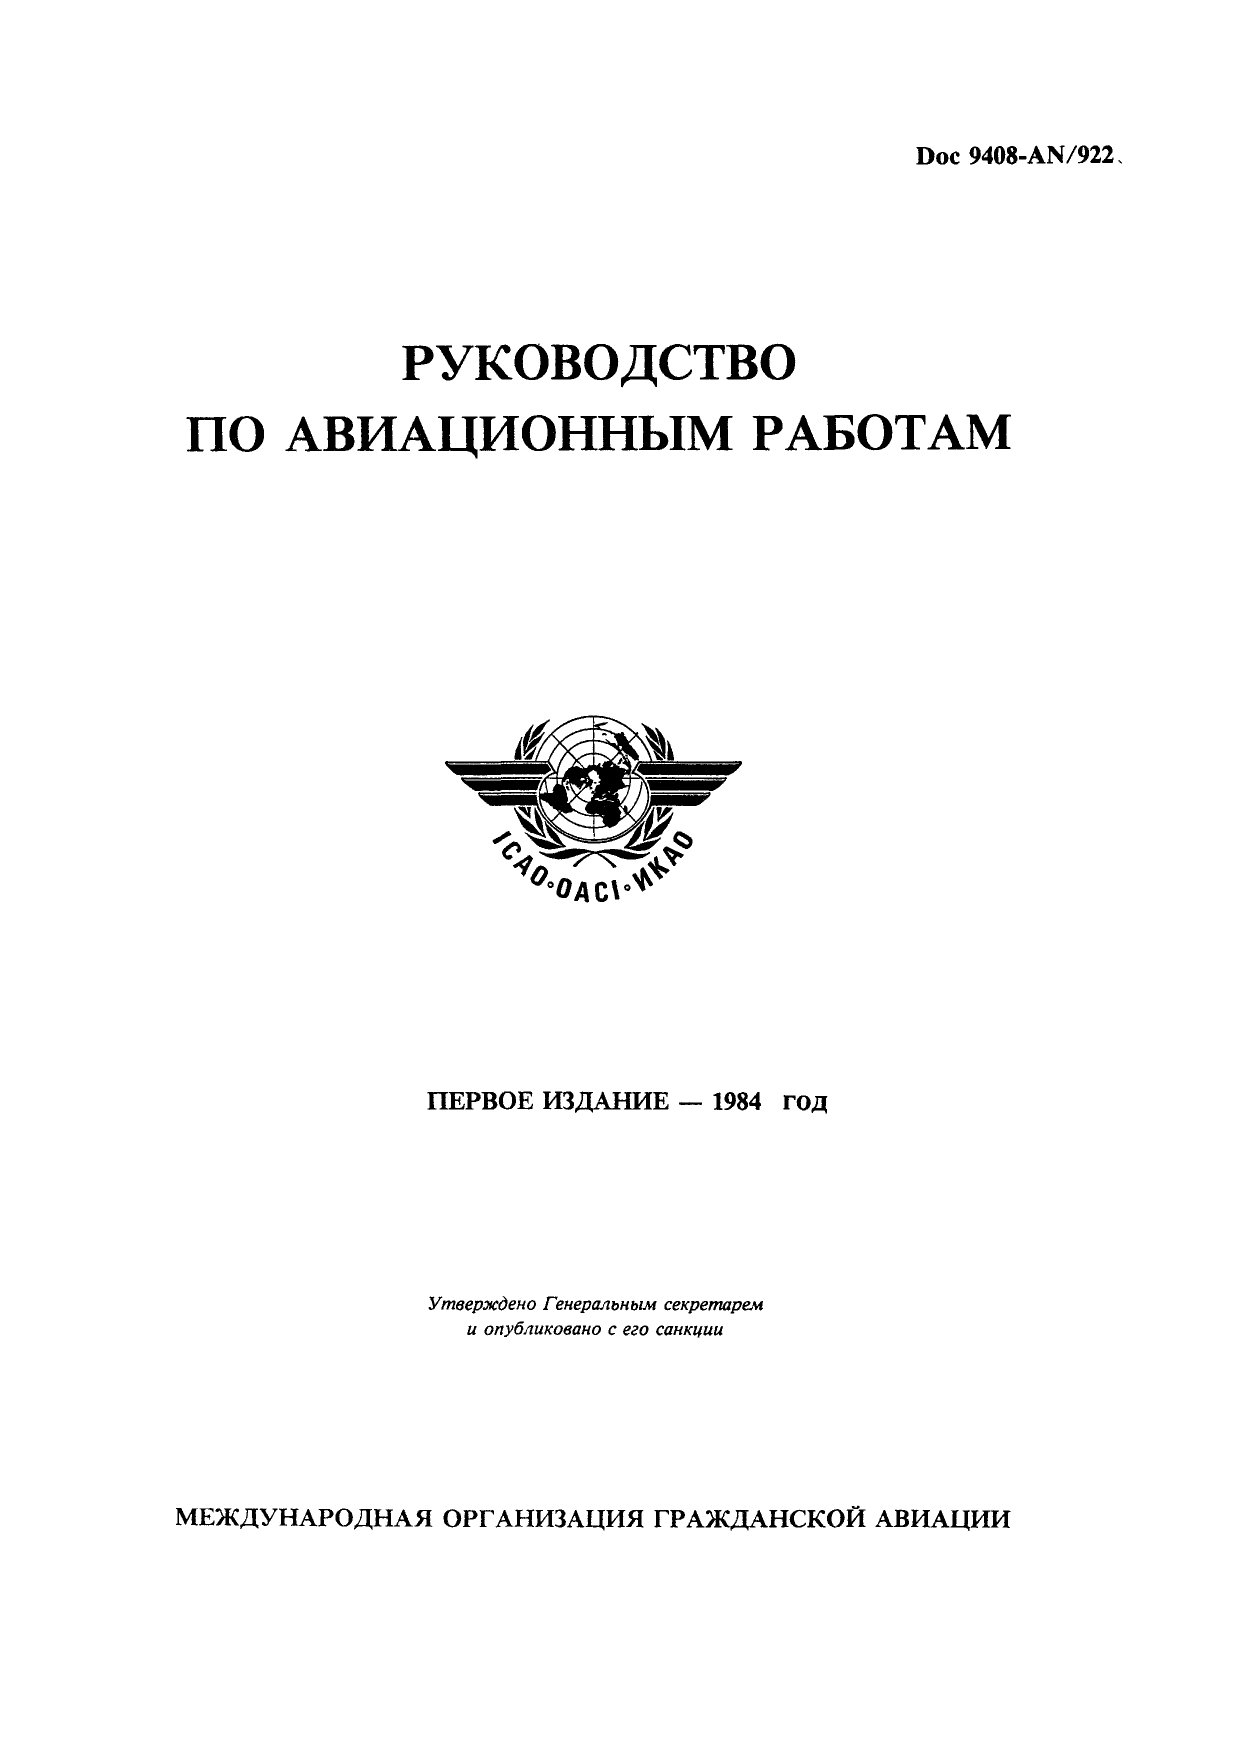 ICAO Doc 9408 Руководство по авиационным работам